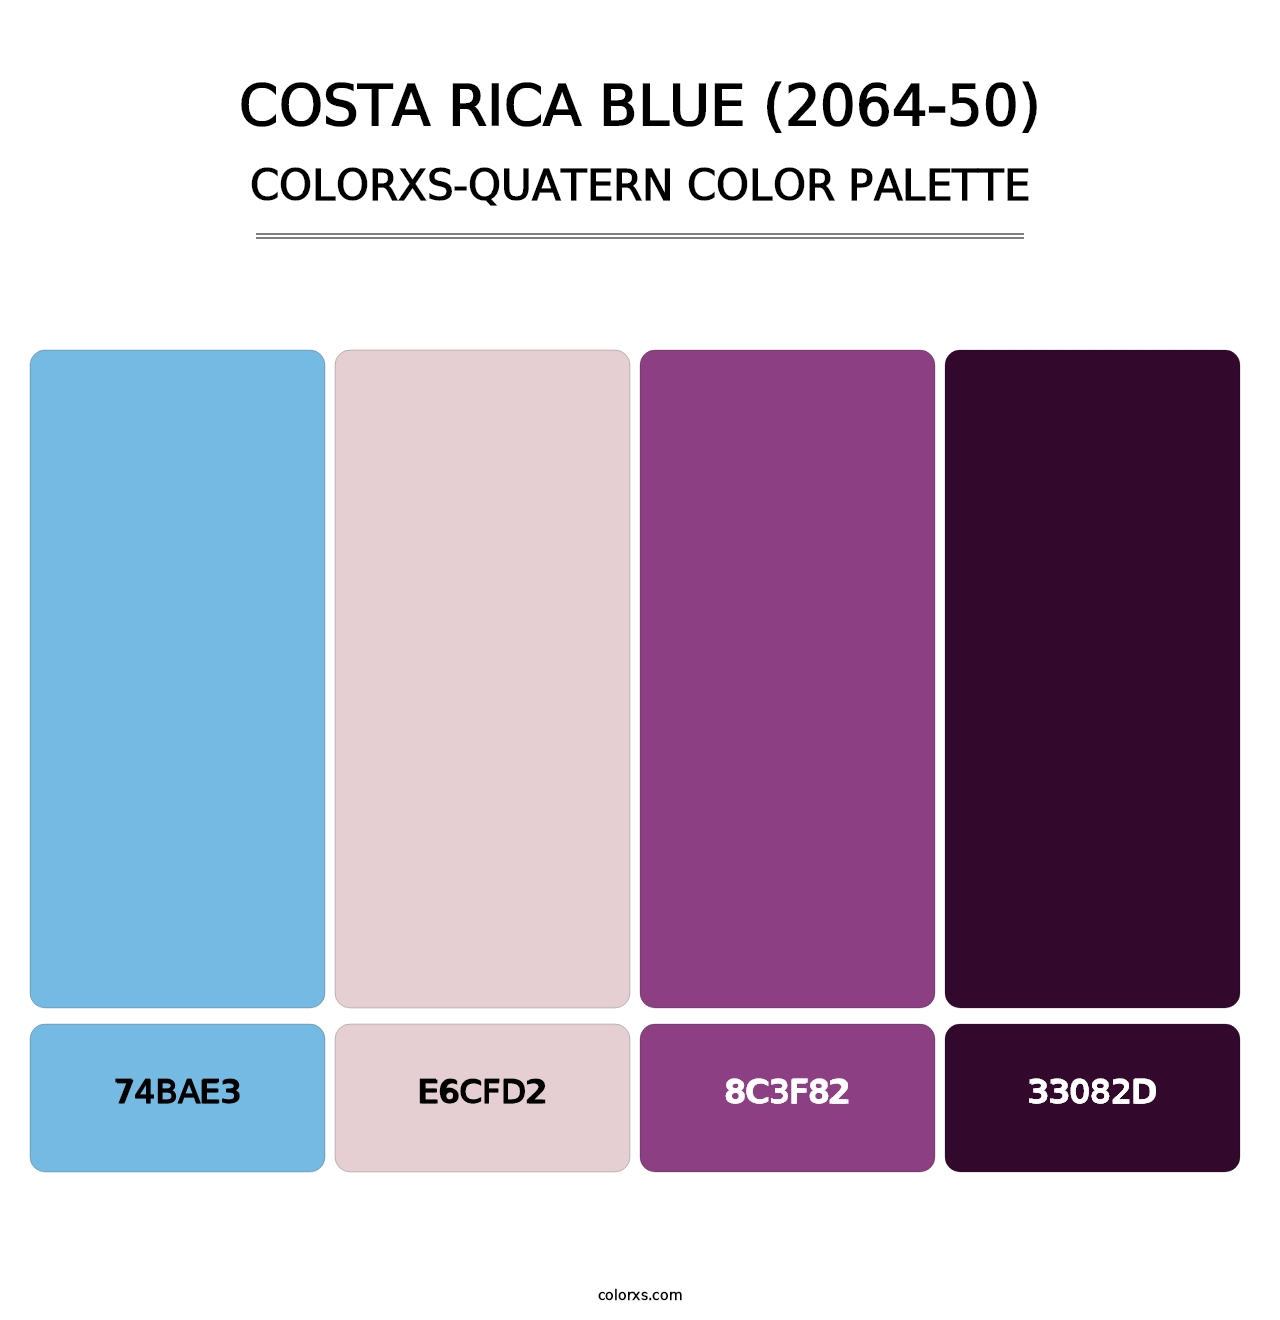 Costa Rica Blue (2064-50) - Colorxs Quatern Palette